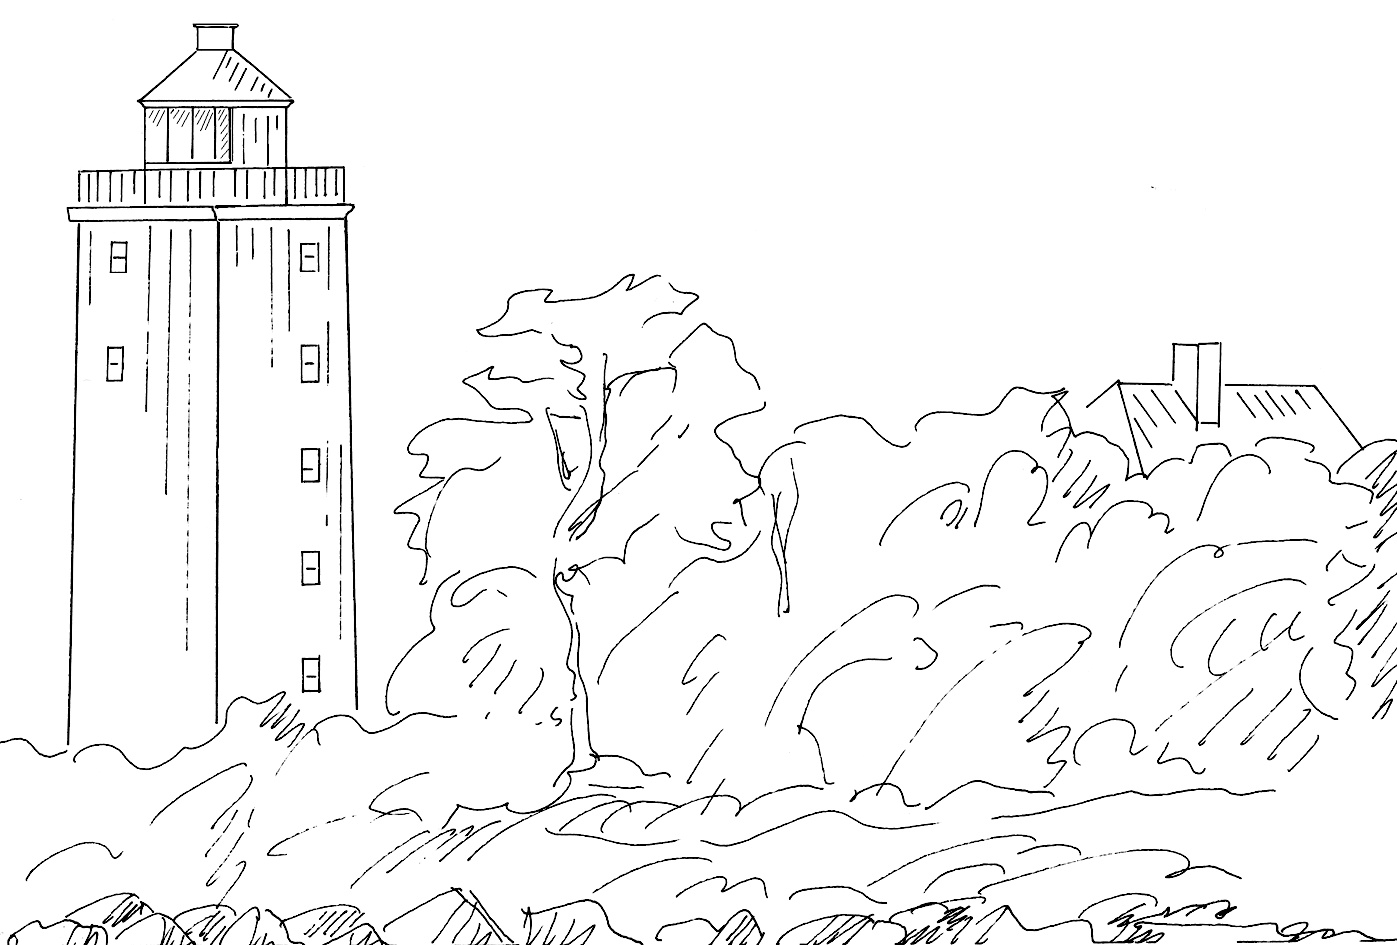 Bornholm - Svaneke, Lt - Lighthouse near Svaneke